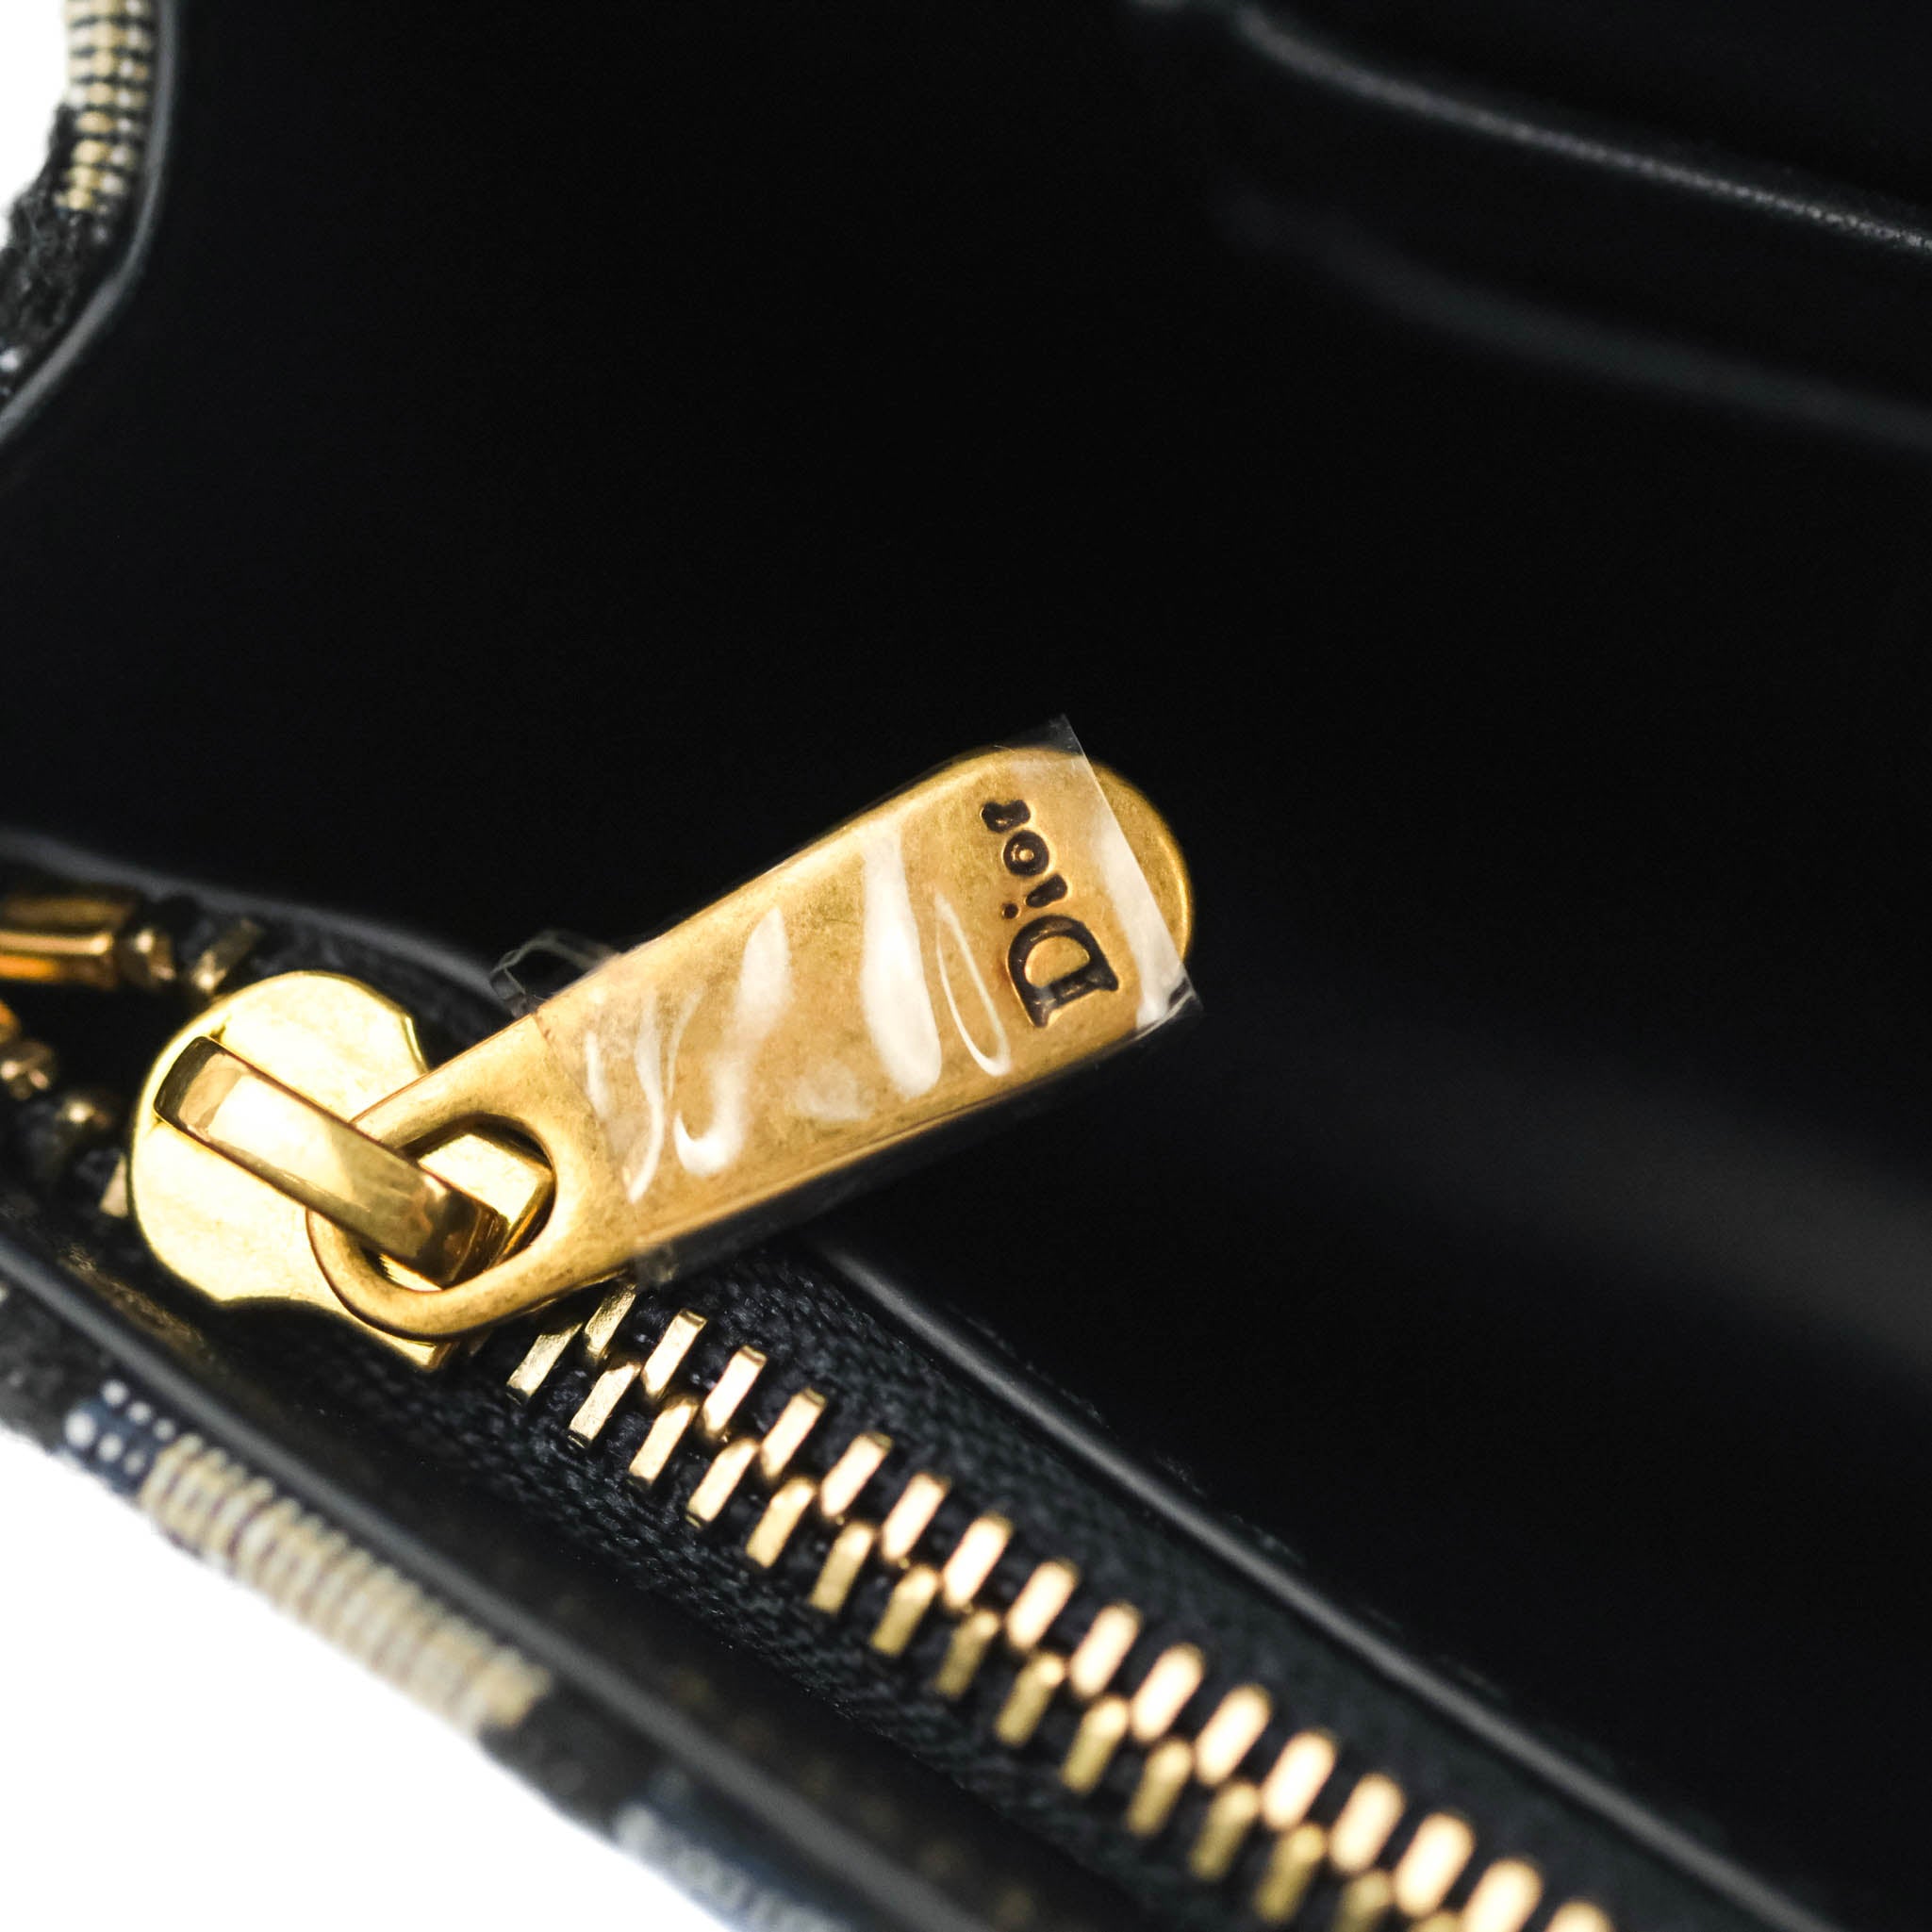 Christian Dior Blue Oblique Jacquard Saddle Belt Bag – Coco Approved Studio